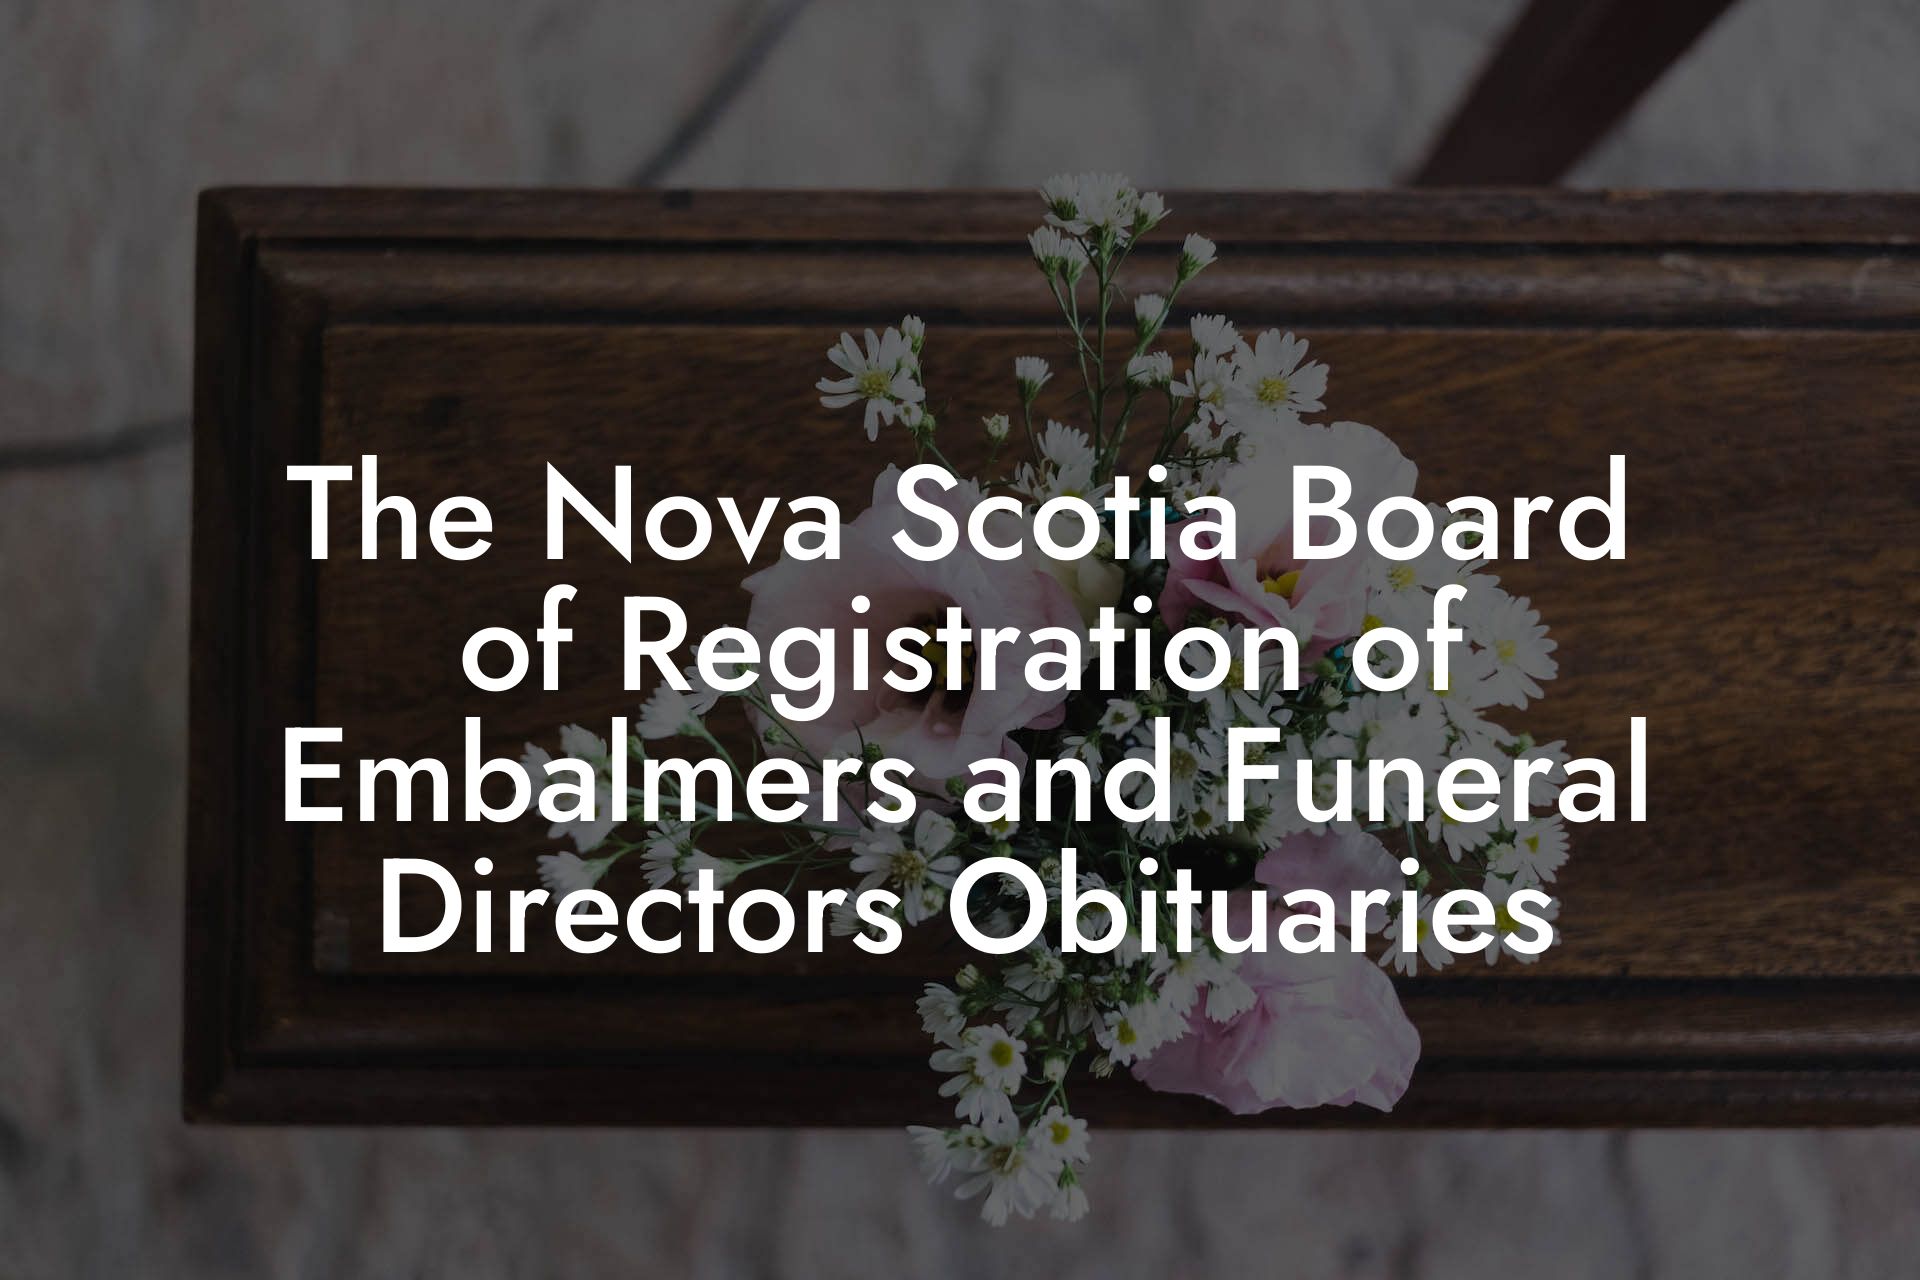 The Nova Scotia Board of Registration of Embalmers and Funeral Directors Obituaries